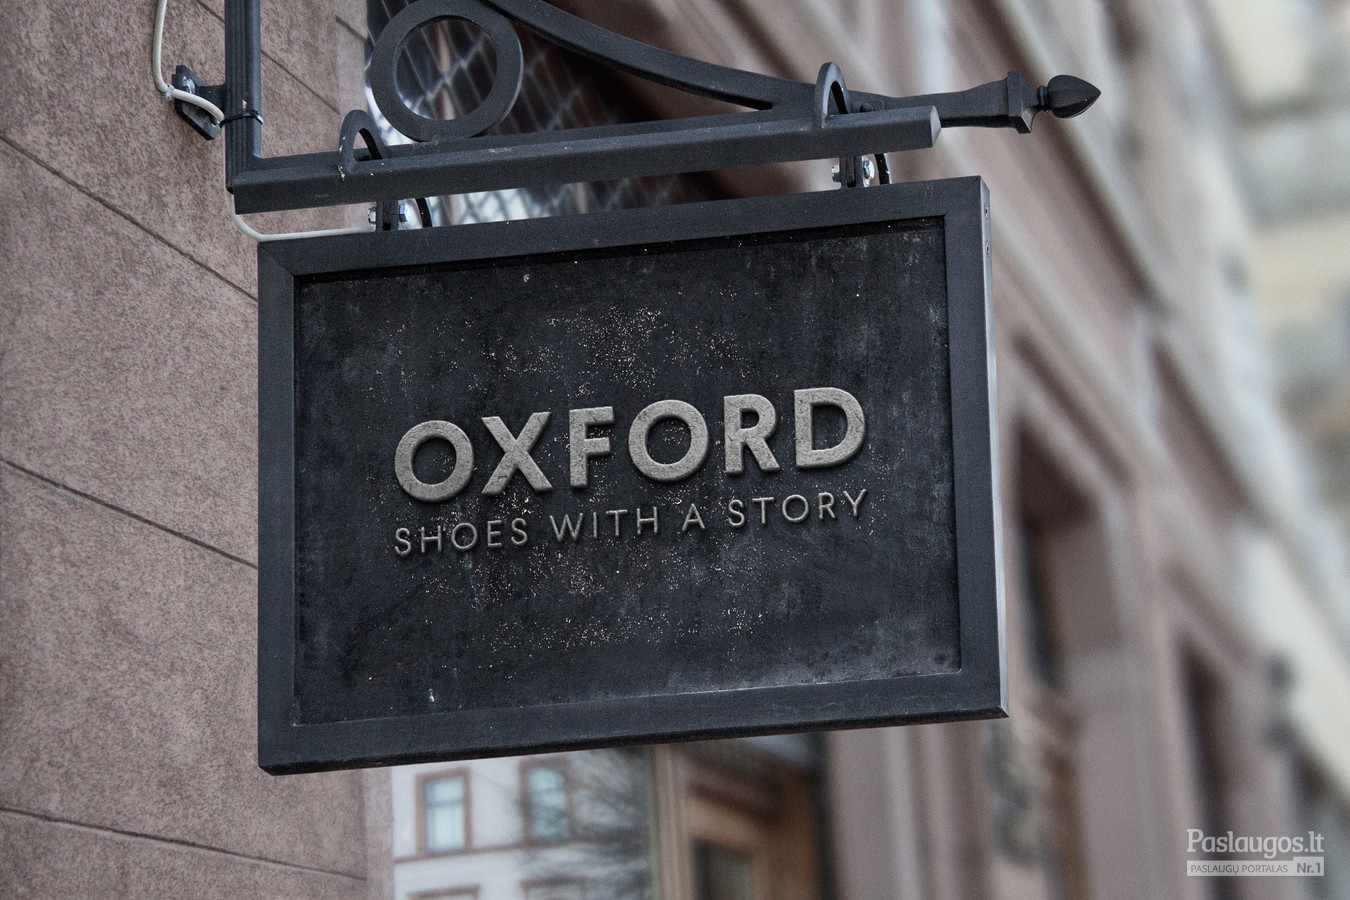 OXFORD – tai rankų darbo vyriškos avalynės namai. Pati idėja ir įkvėpimas logotipui – angliška rankų darbo avalynė. Šis ženklas patikimas, ilgaamžiškumą bei stilių vertinantis.